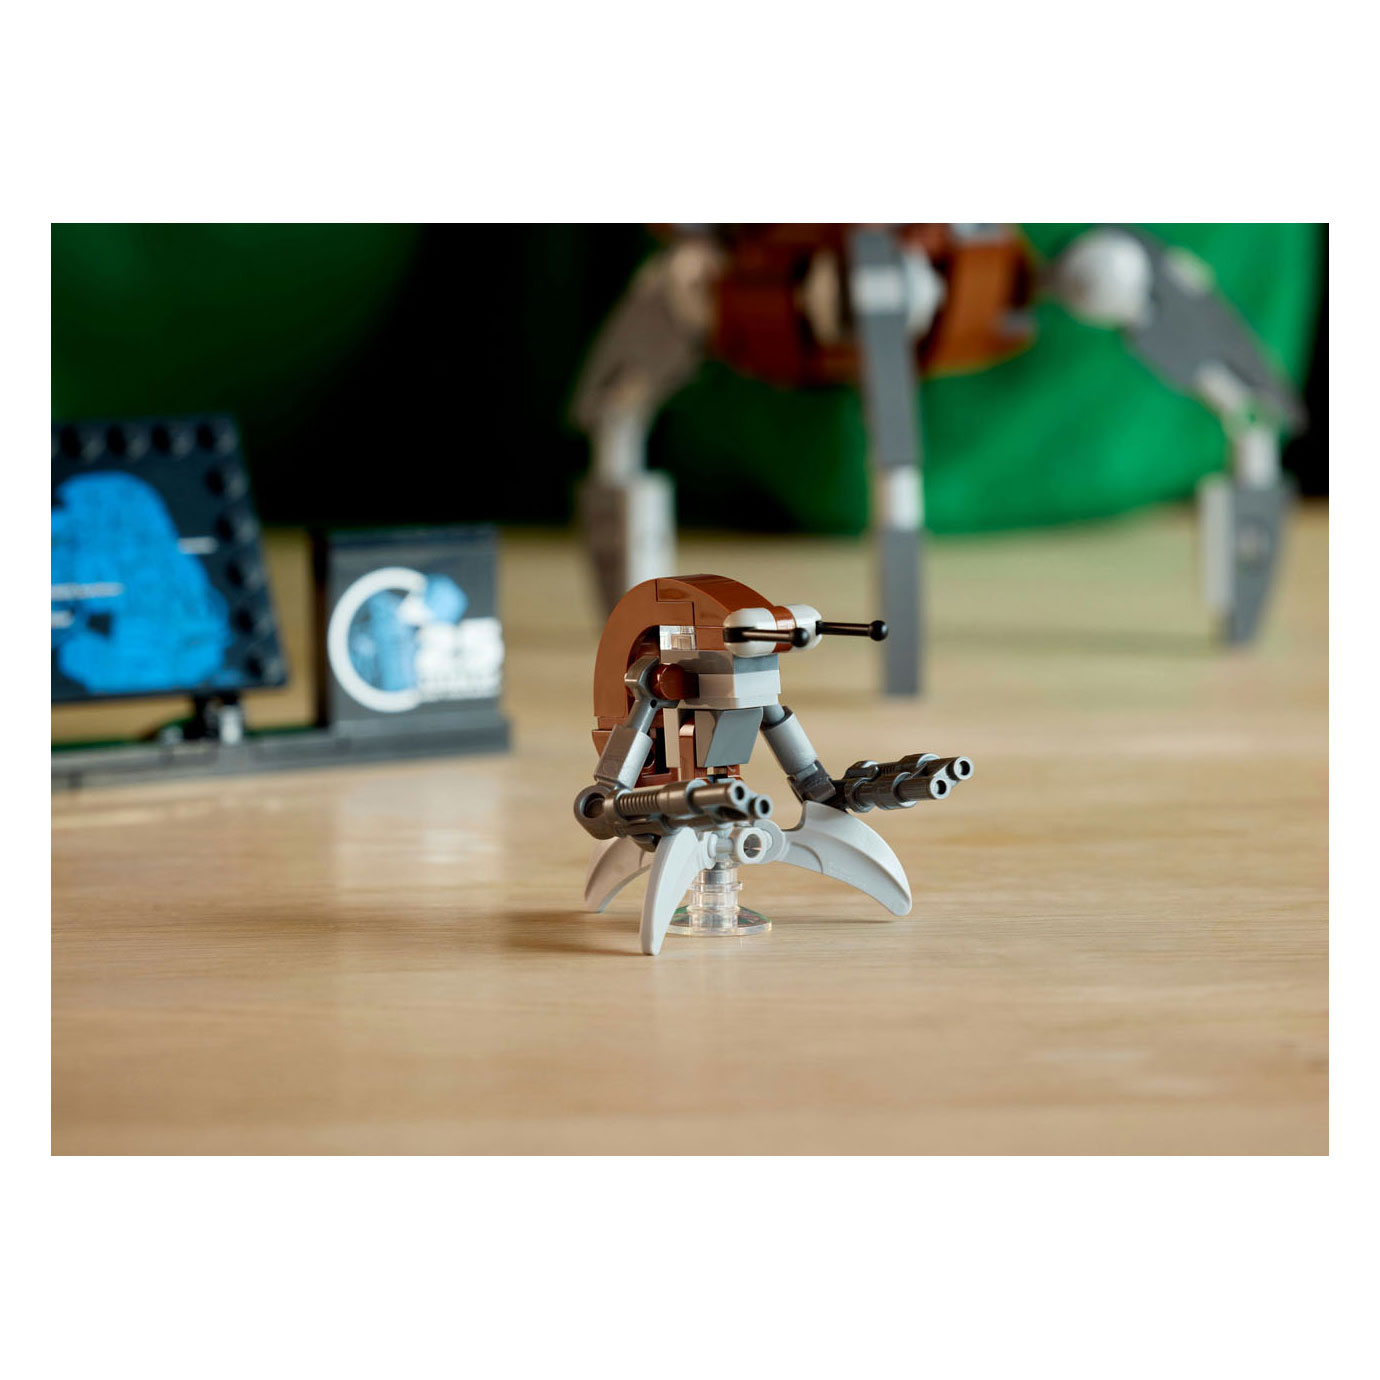 LEGO Star Wars 75381 Droideka Droid